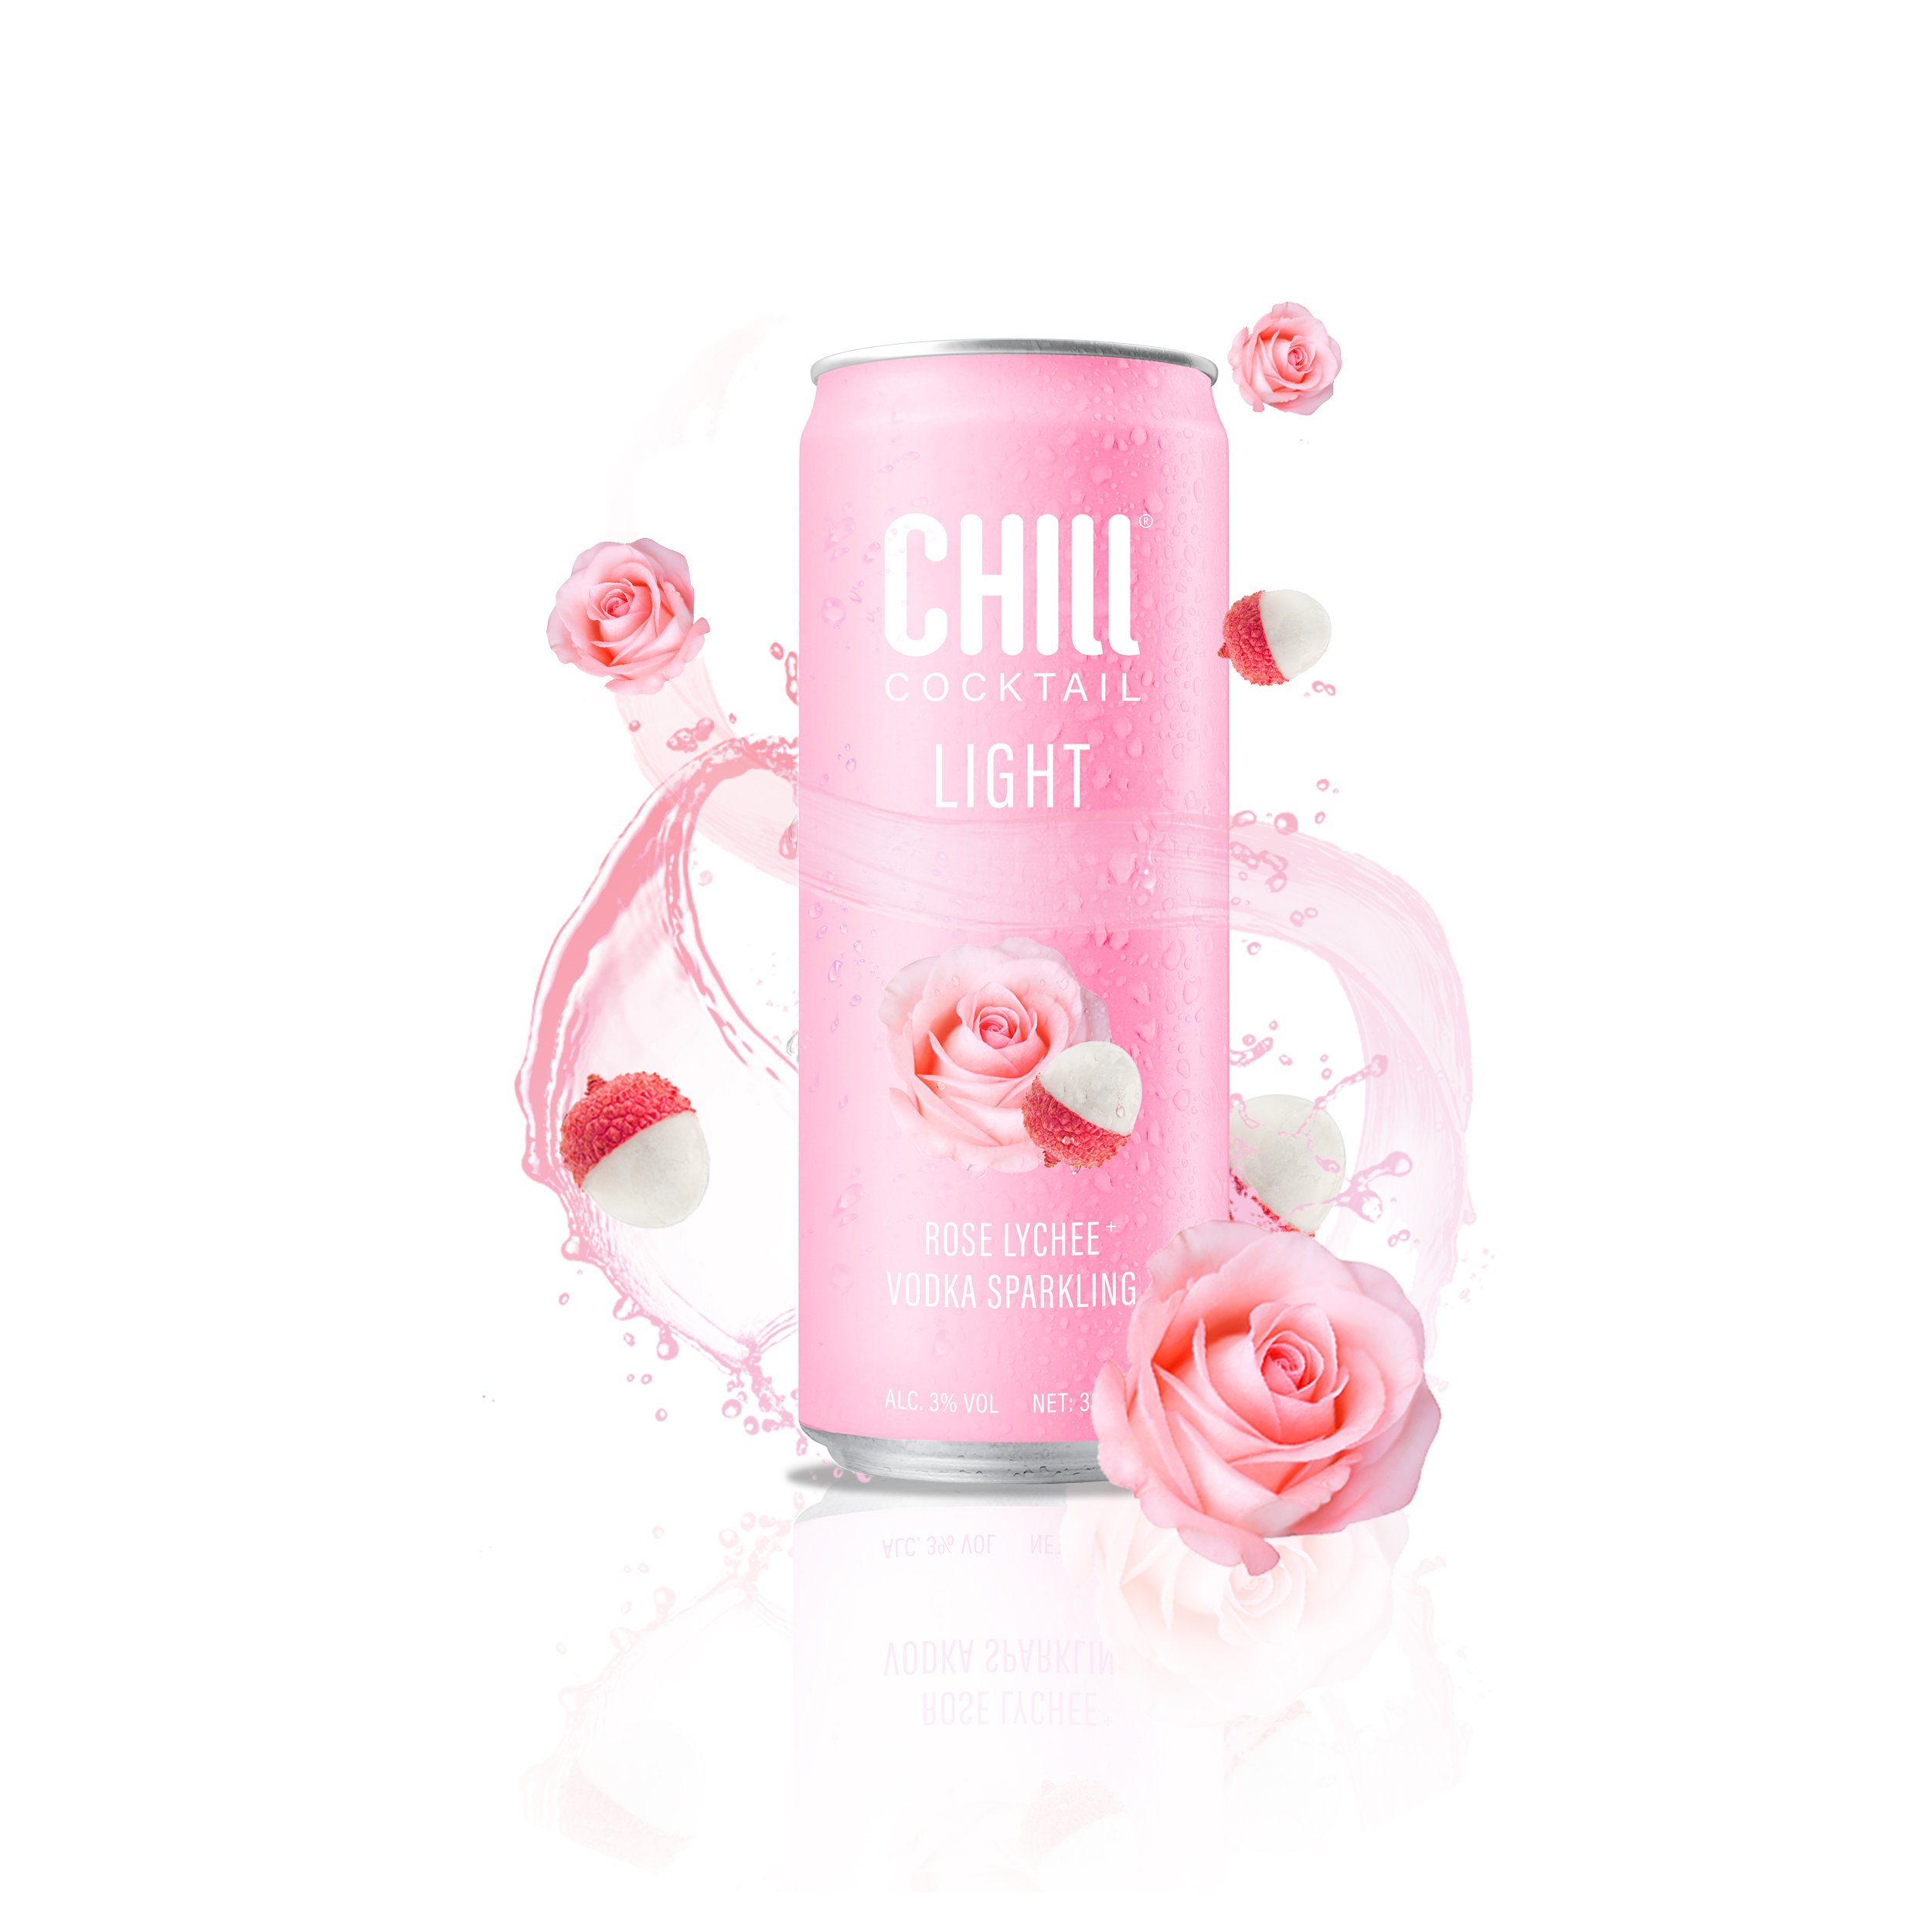 Một ly Rosé Chill đầy màu sắc và ngon tuyệt cú mèo sẽ khiến bạn phải thích thú và muốn thưởng thức bất cứ lúc nào. Nếu bạn muốn trải nghiệm tựa như thế này, hãy cùng xem những hình ảnh Rosé Chill thật đẹp và đầy cuốn hút này và cảm nhận những giây phút thư giãn!